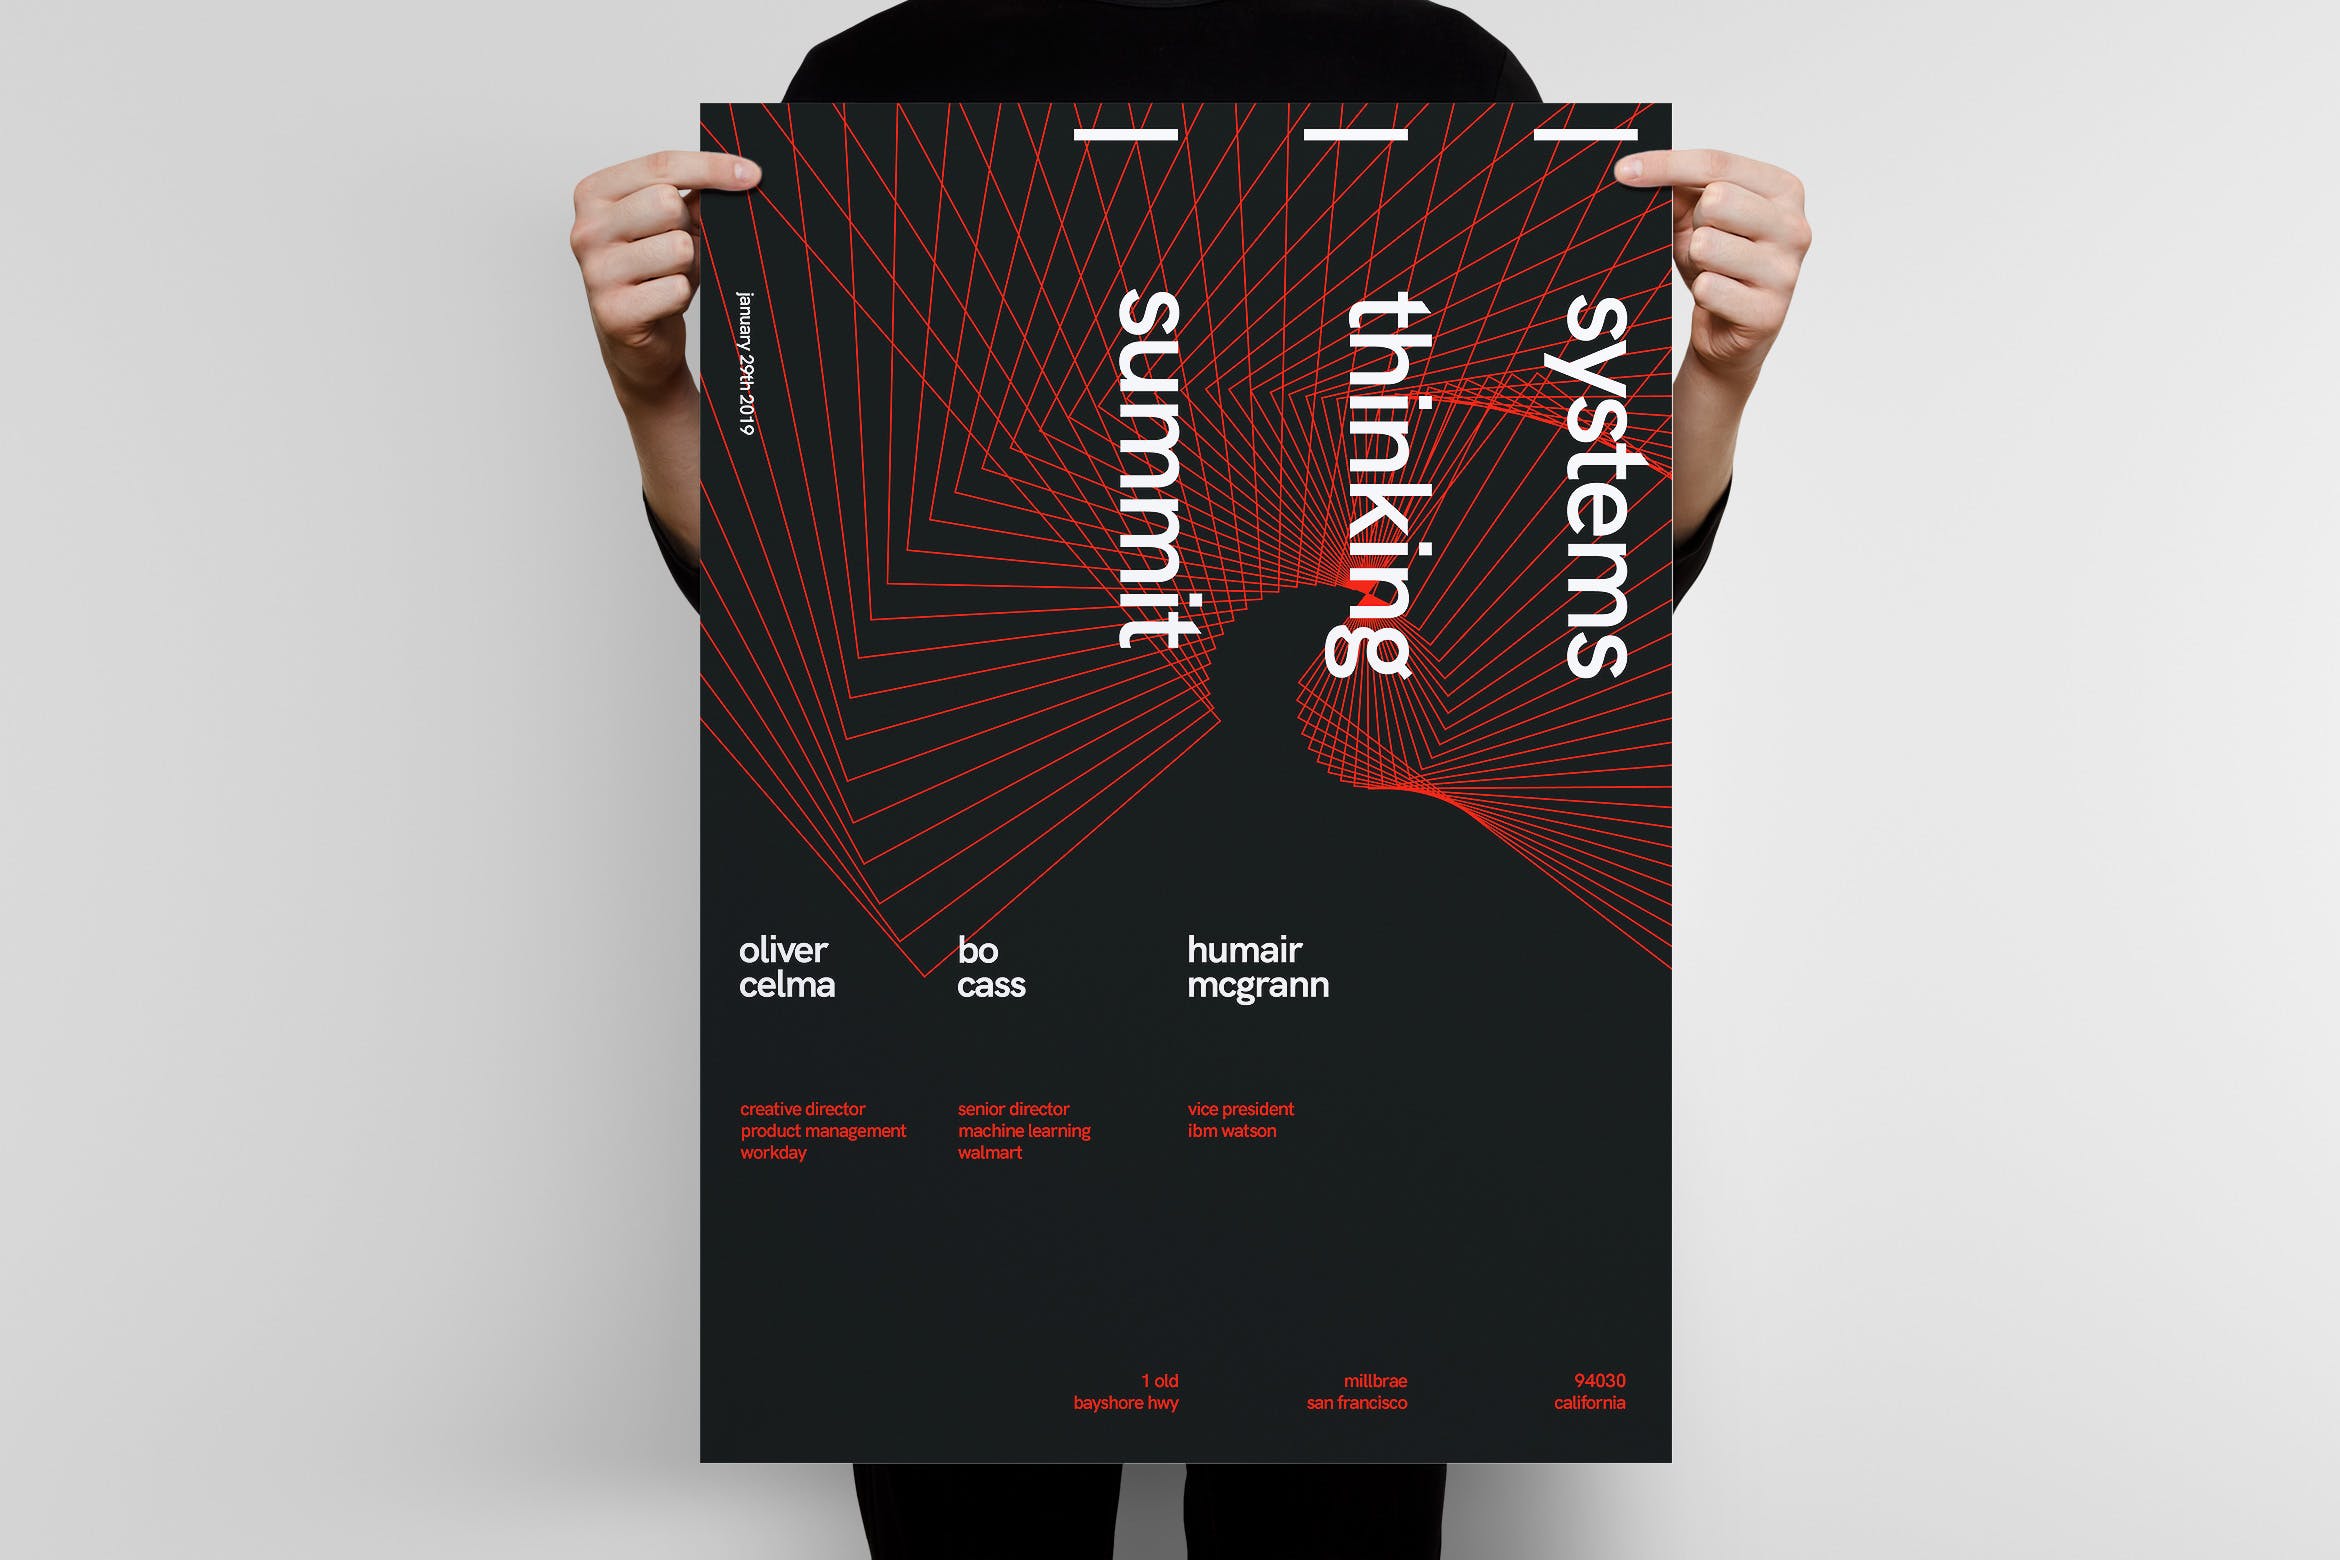 行业峰会大型会议宣传海报设计模板v2 Systems Thinking Summit Poster Template 2设计素材模板